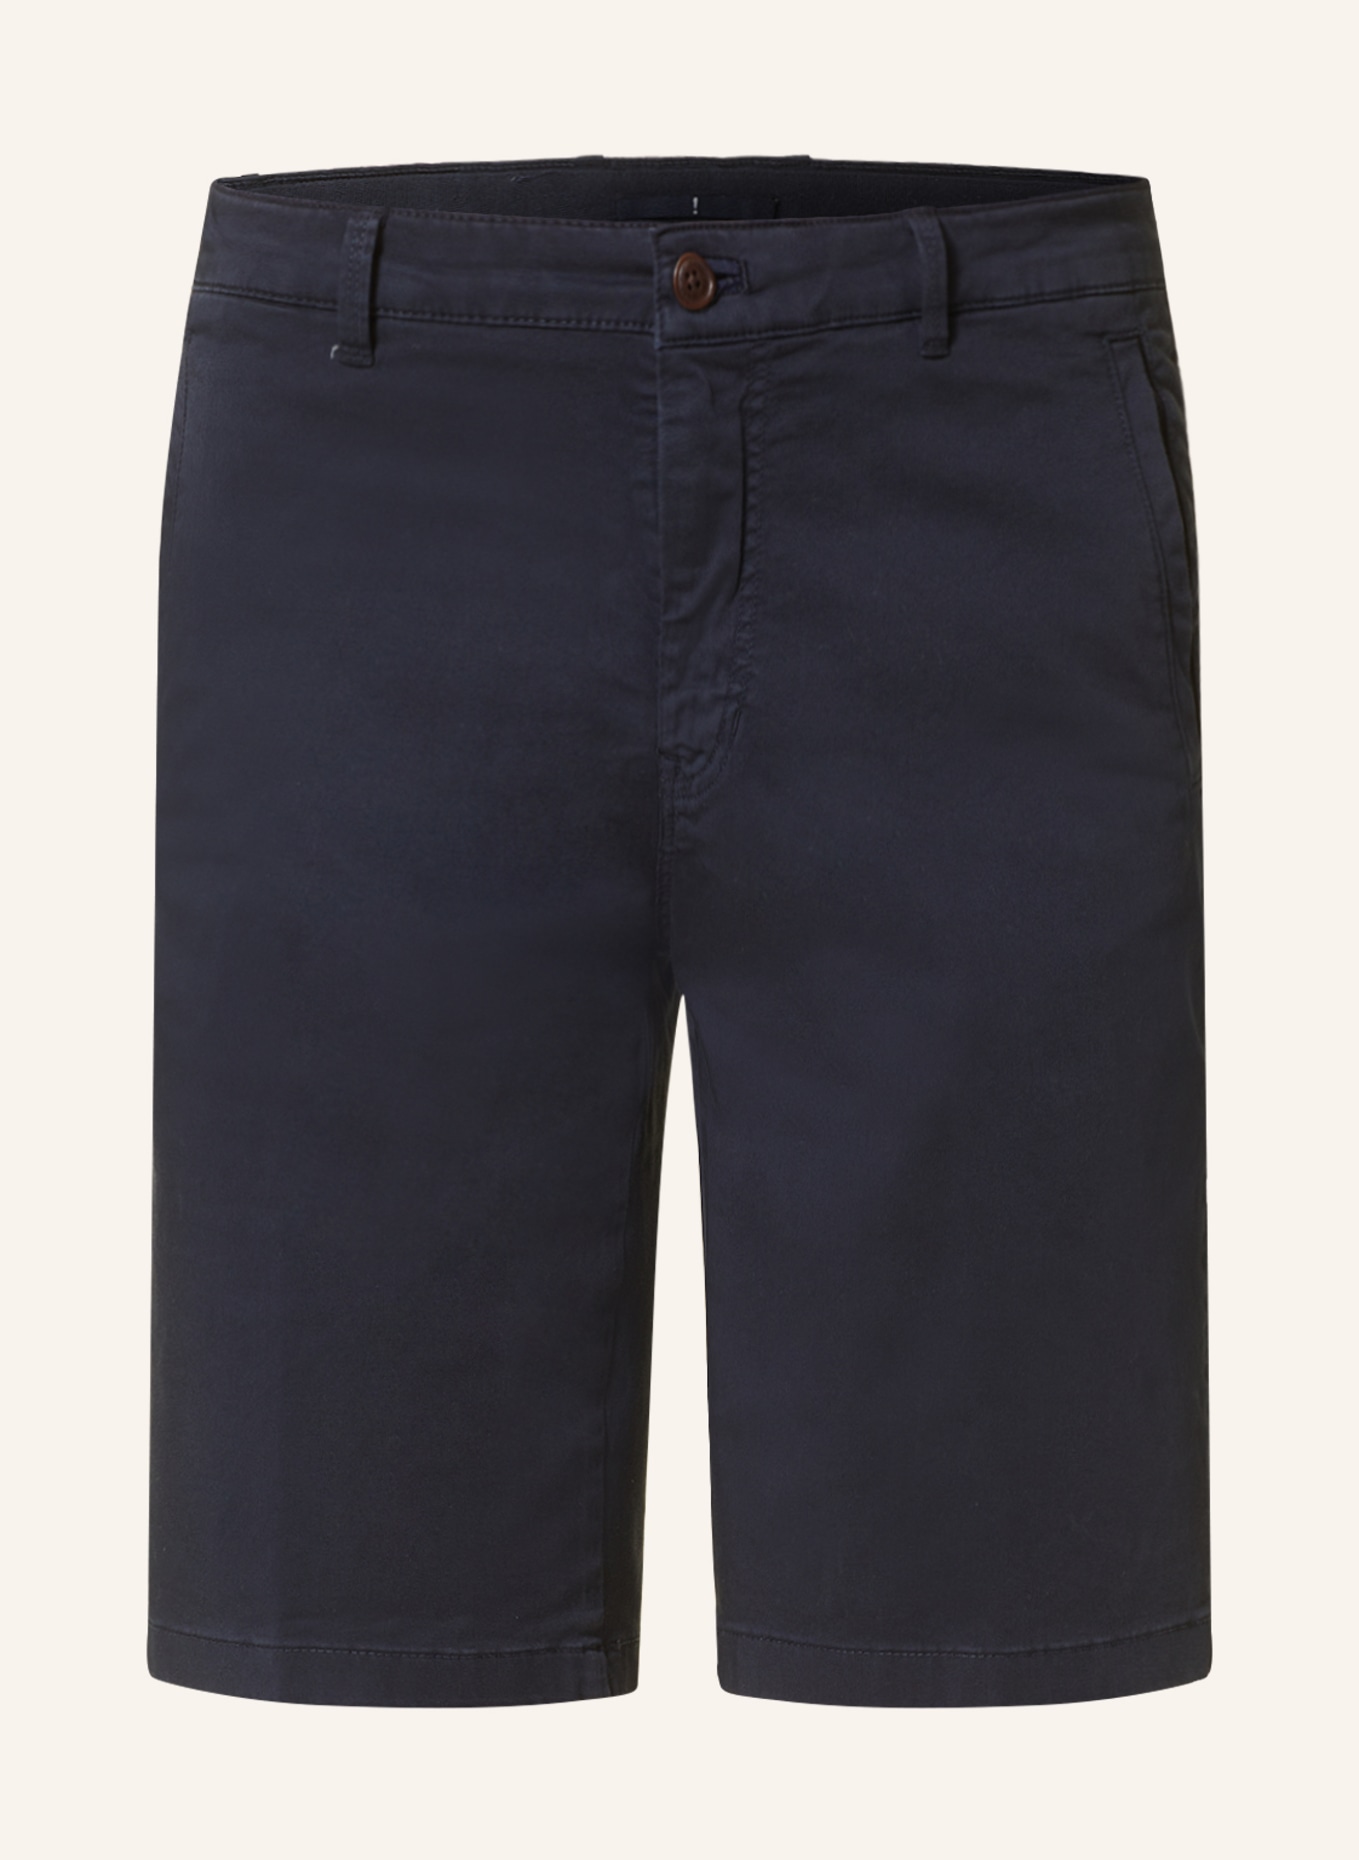 JOOP! JEANS Shorts regular fit, Color: DARK BLUE (Image 1)